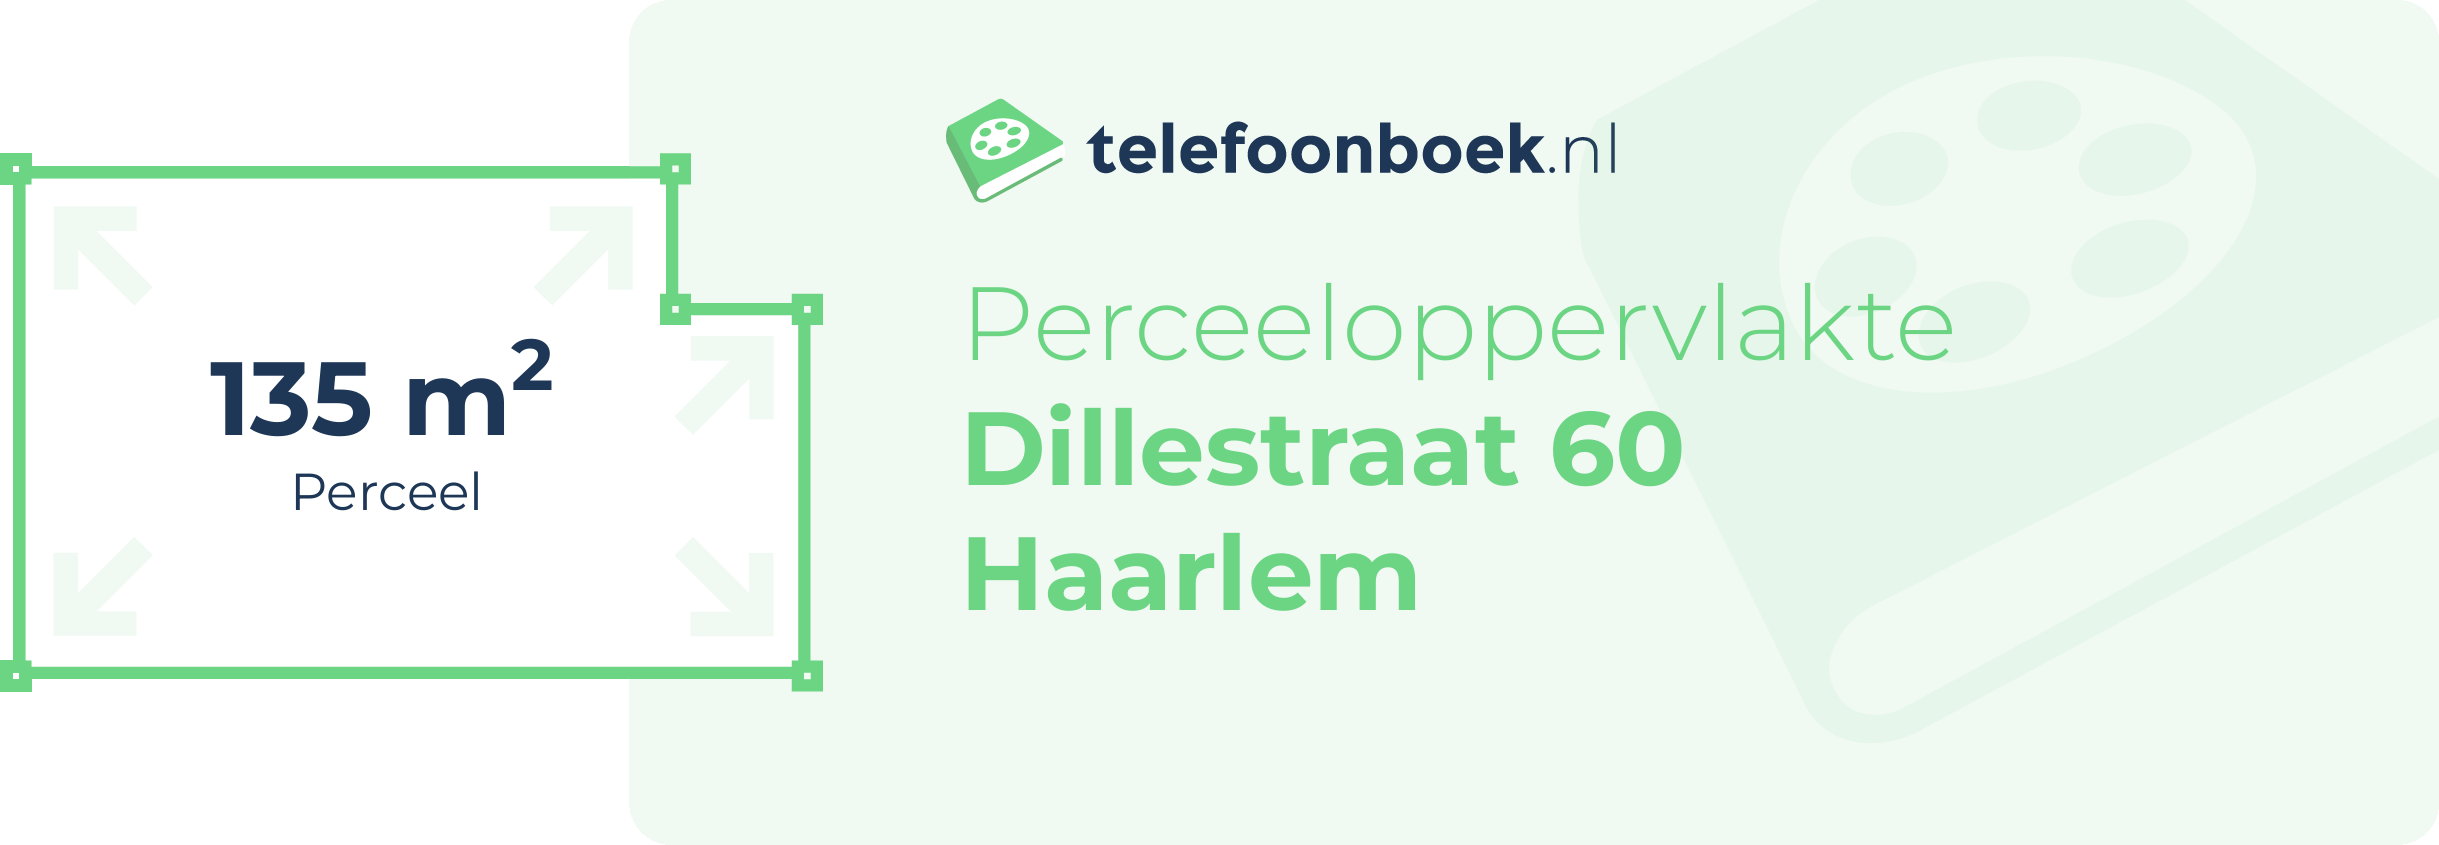 Perceeloppervlakte Dillestraat 60 Haarlem